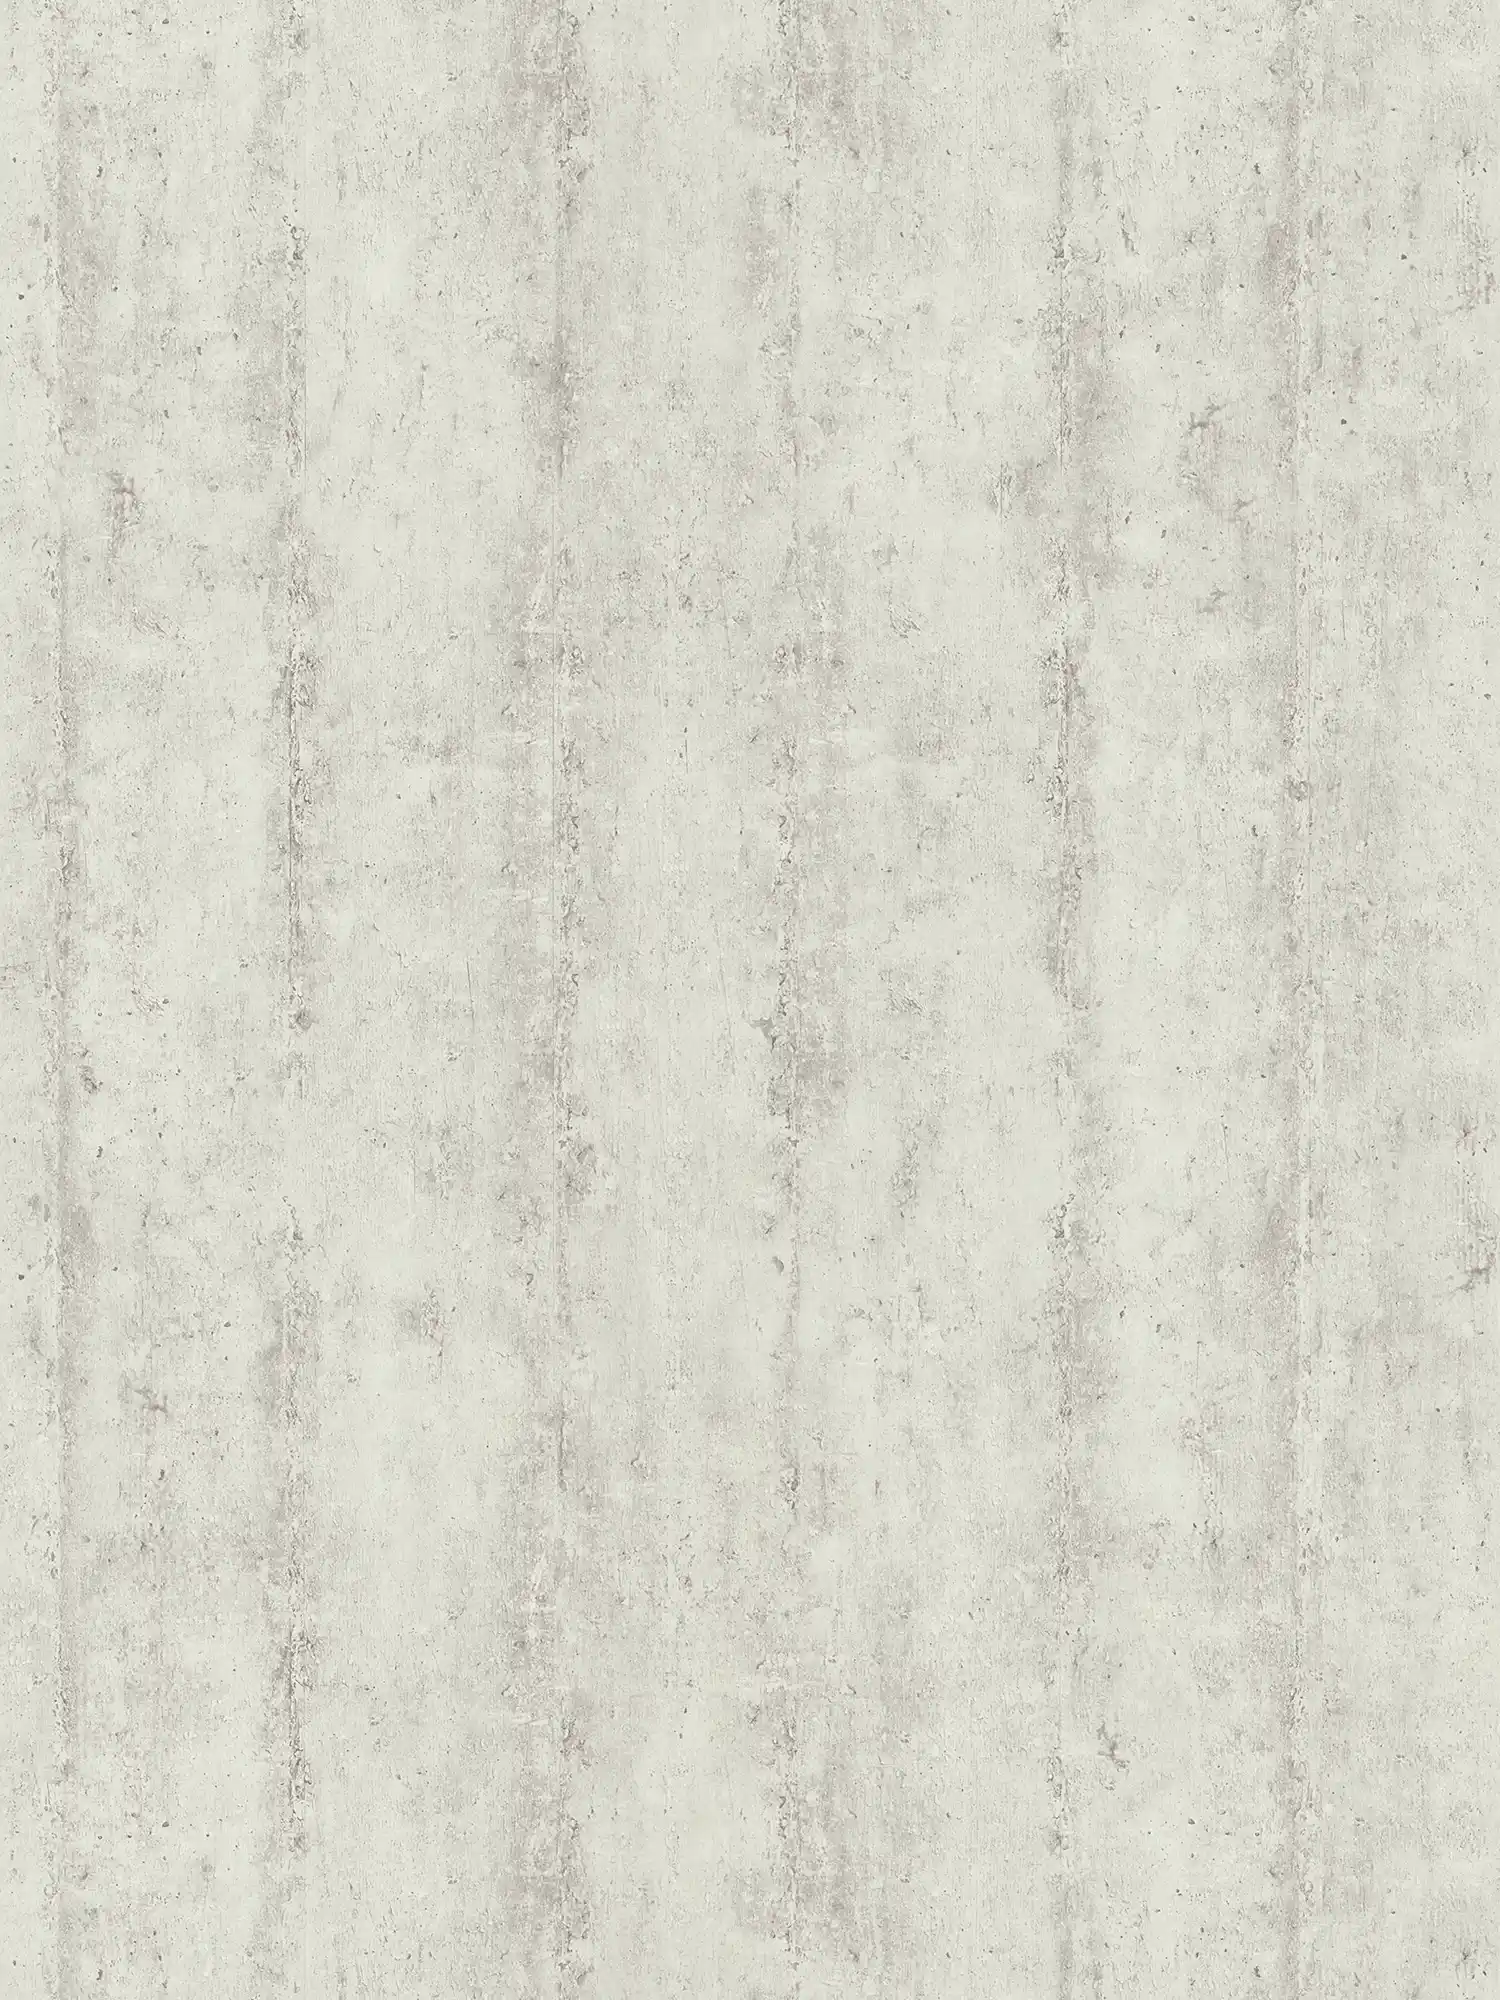 Carta da parati non tessuta con motivo a righe effetto cemento - beige, grigio
